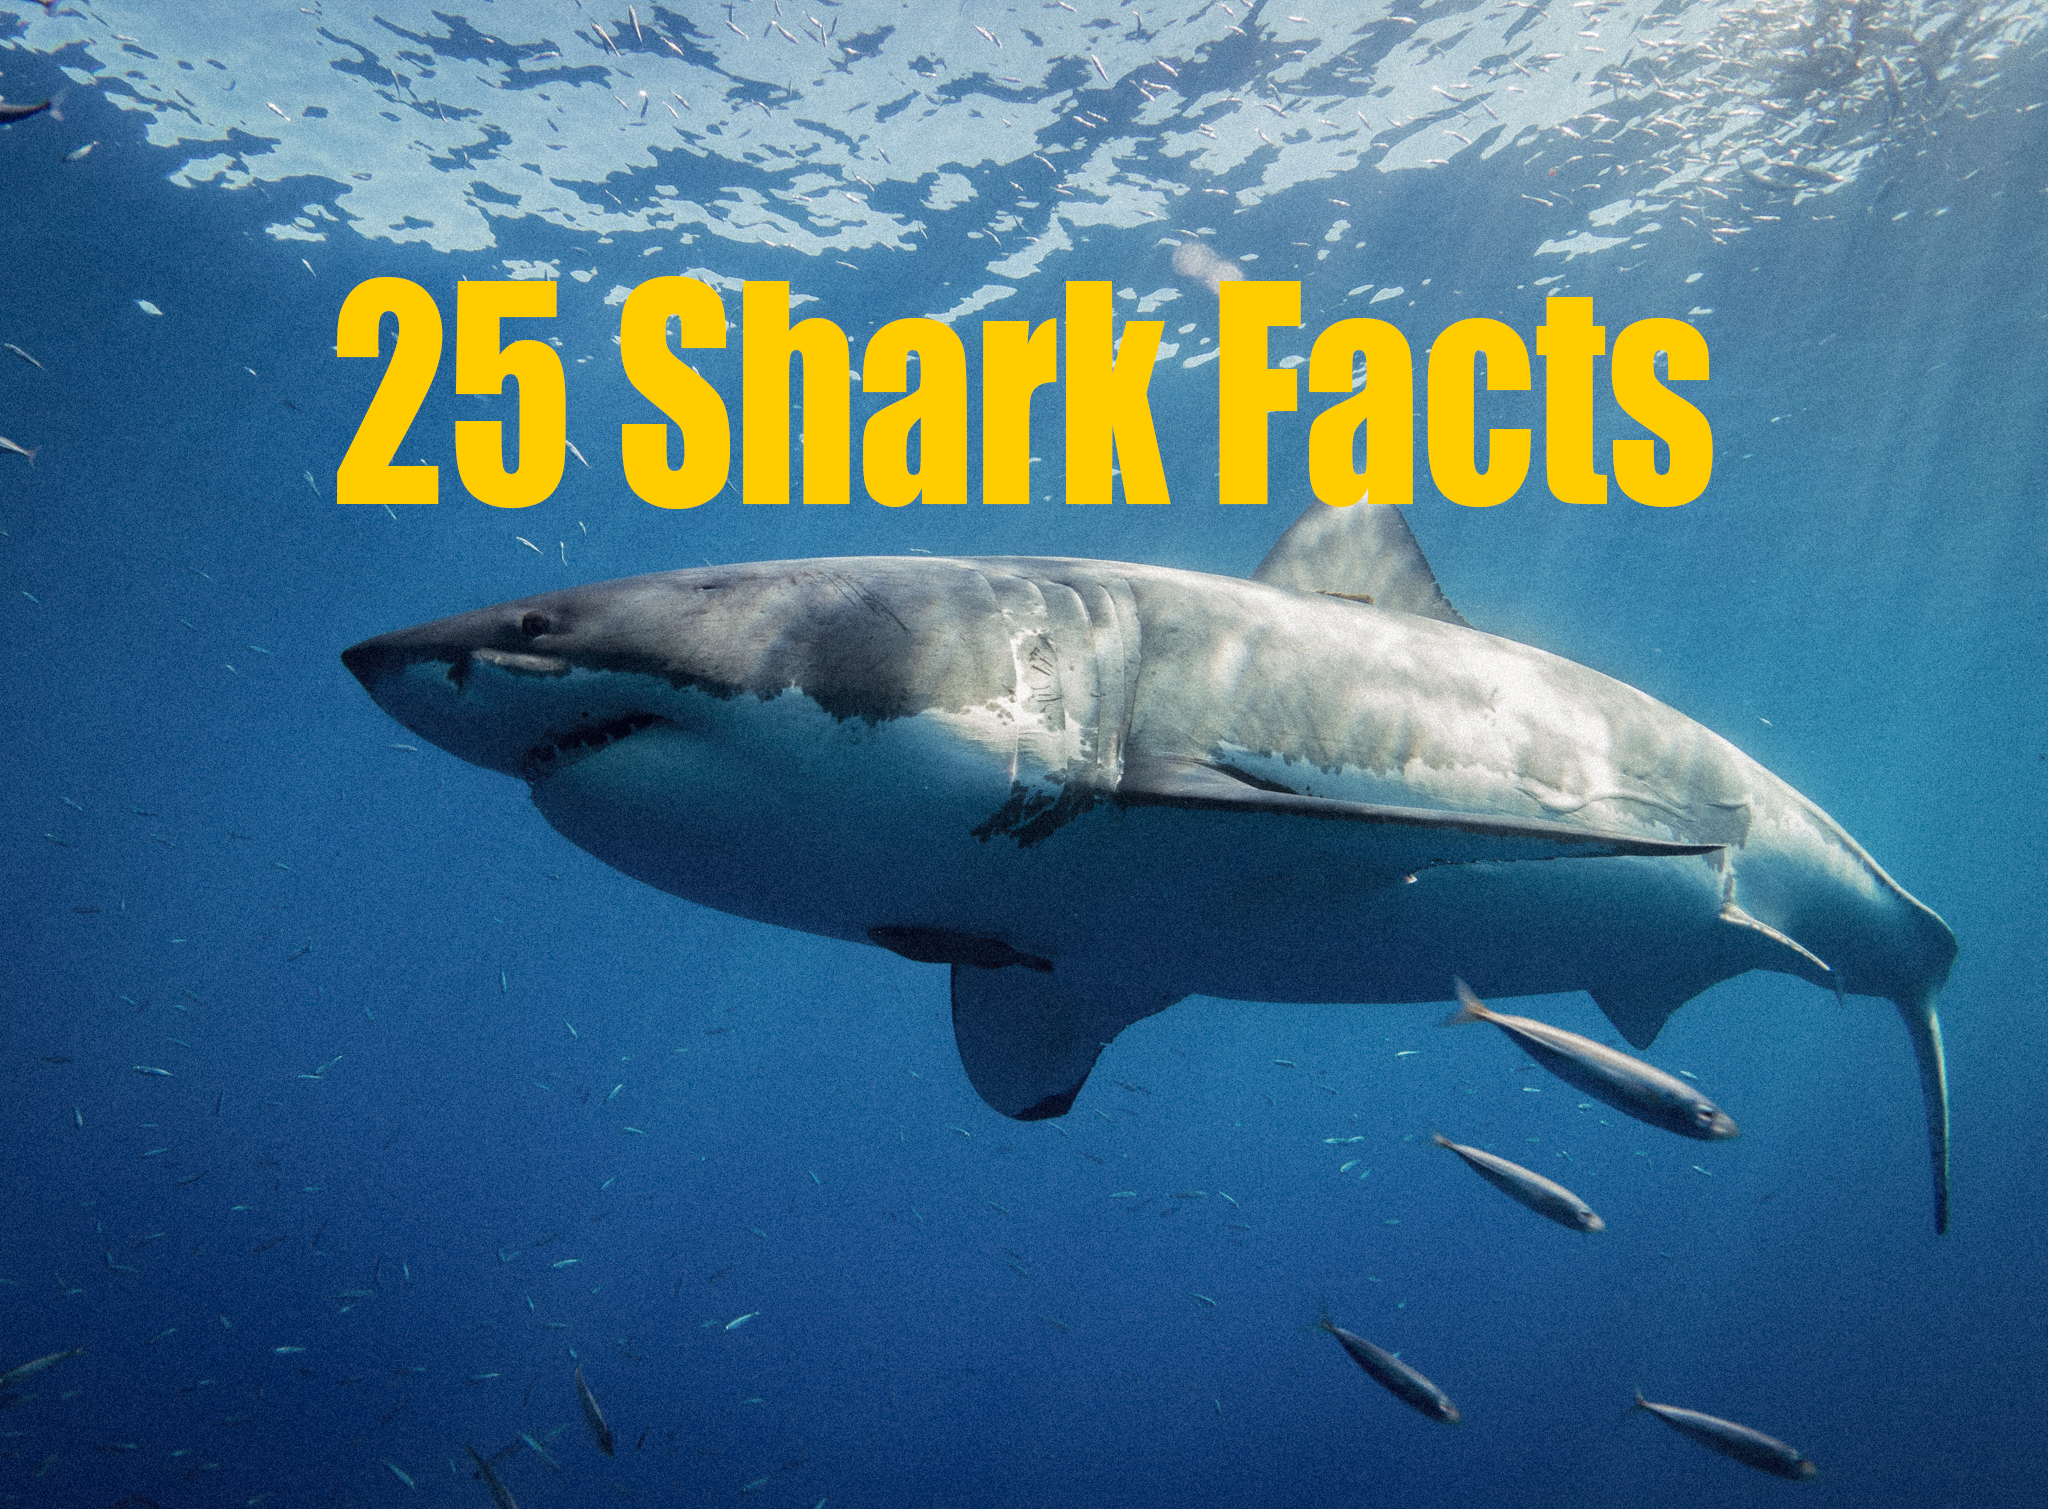 25 Shark Facts